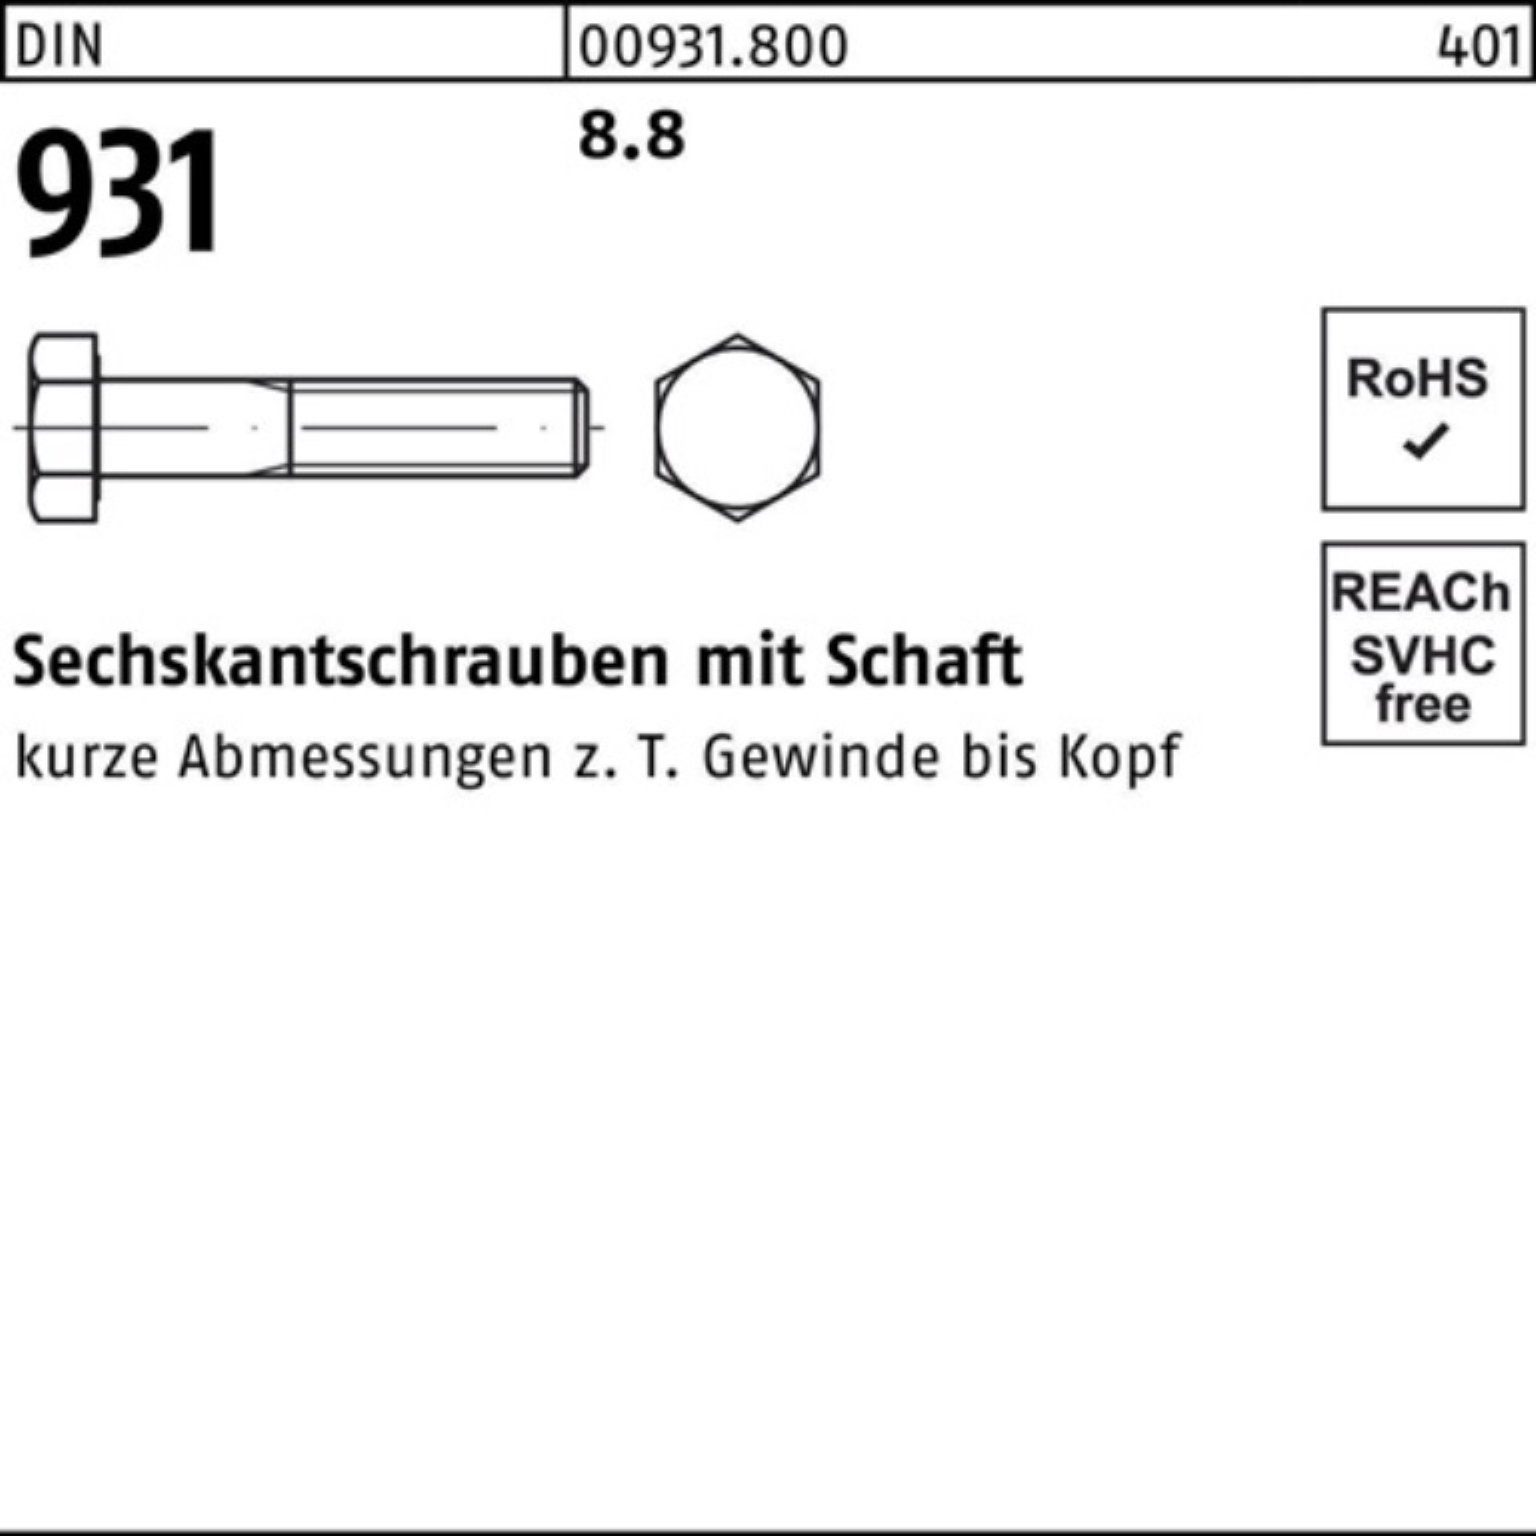 Top-Show Reyher Sechskantschraube 100er 360 Stück 8.8 DIN DIN Sechskantschraube 1 Pack 931 M27x Schaft